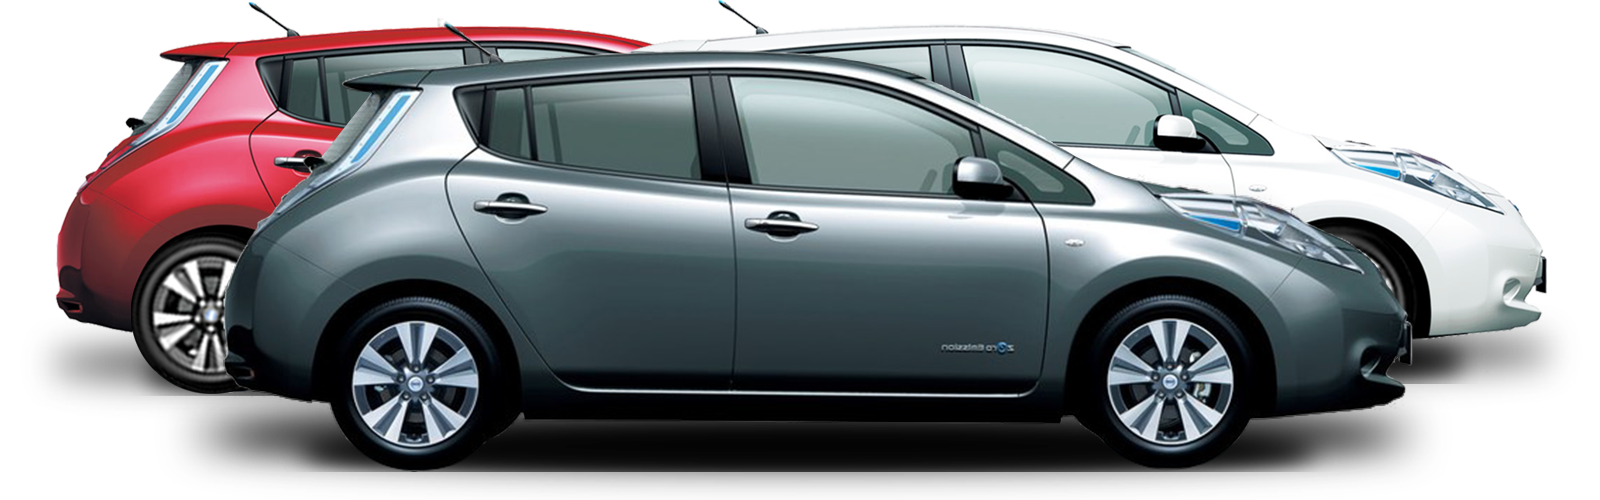 Nissan Leaf Electric Car Rental